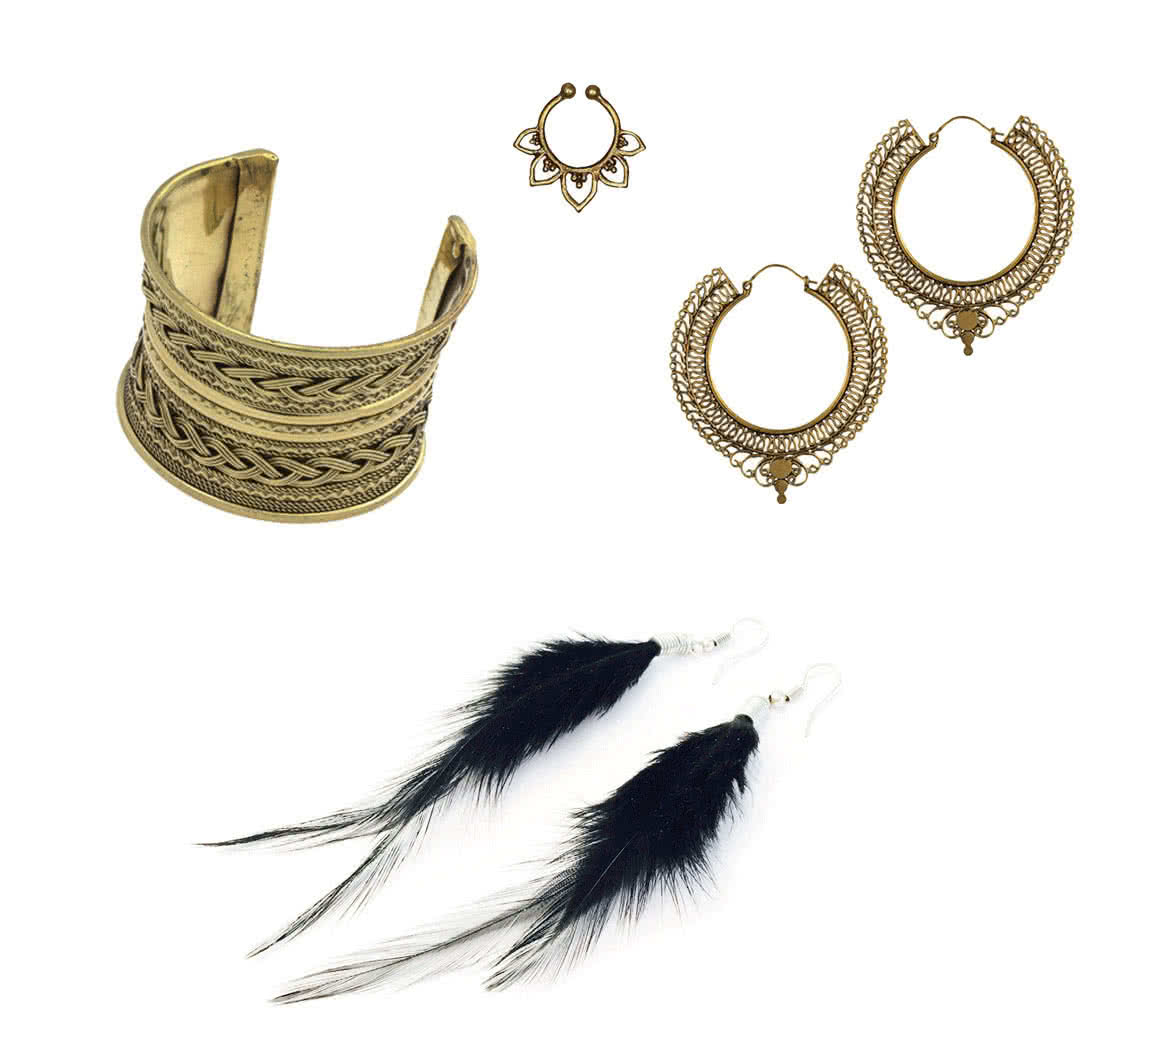 Armreif aus Gold, passende goldene Ohrringe, Orhrringe aus schwarzen Federn